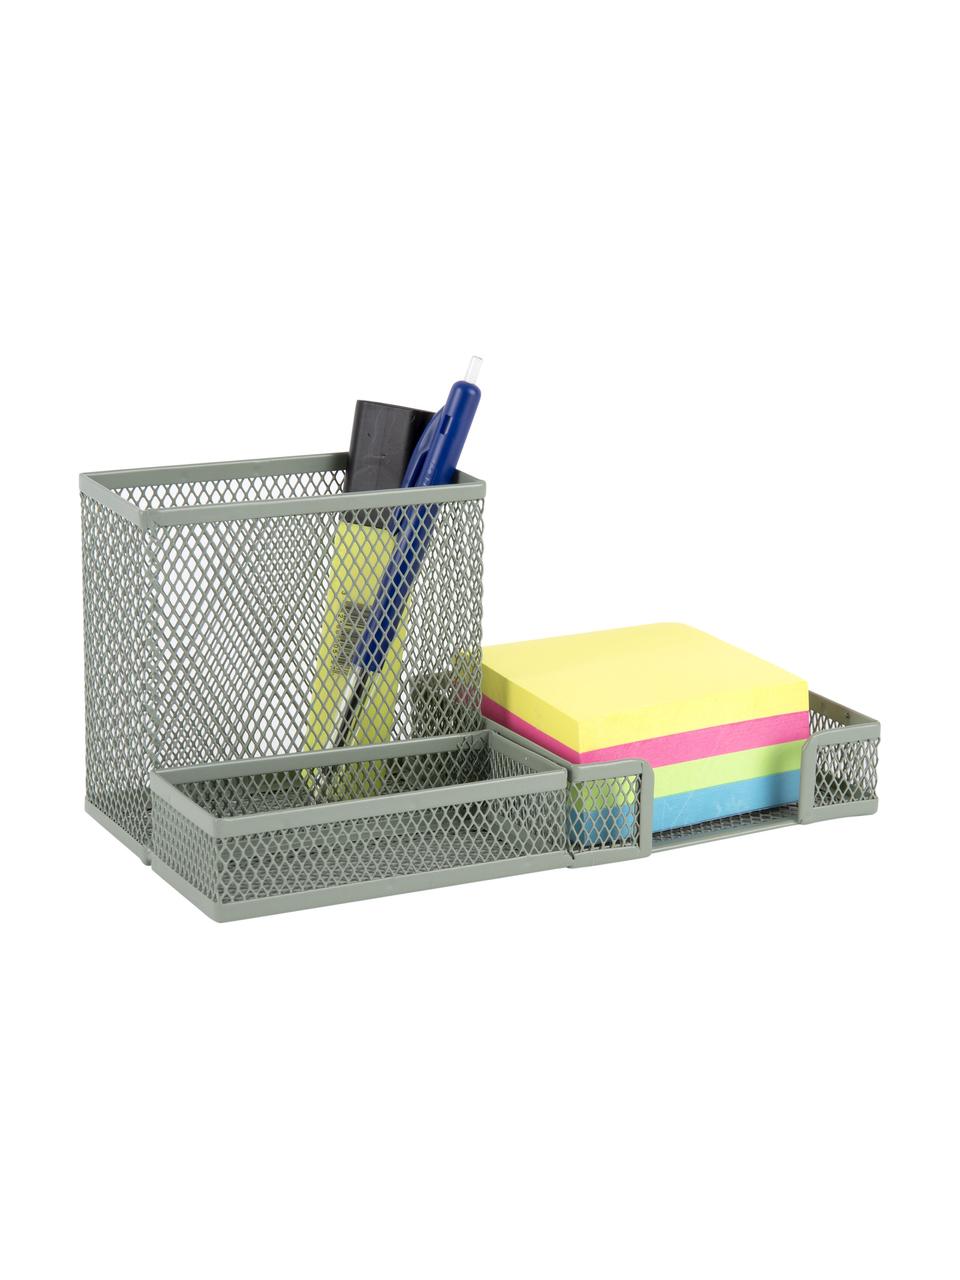 Bureau organizer Essentials in grijsgroen, Gecoat metaal, Grijsgroen, B 22 x D 10 cm